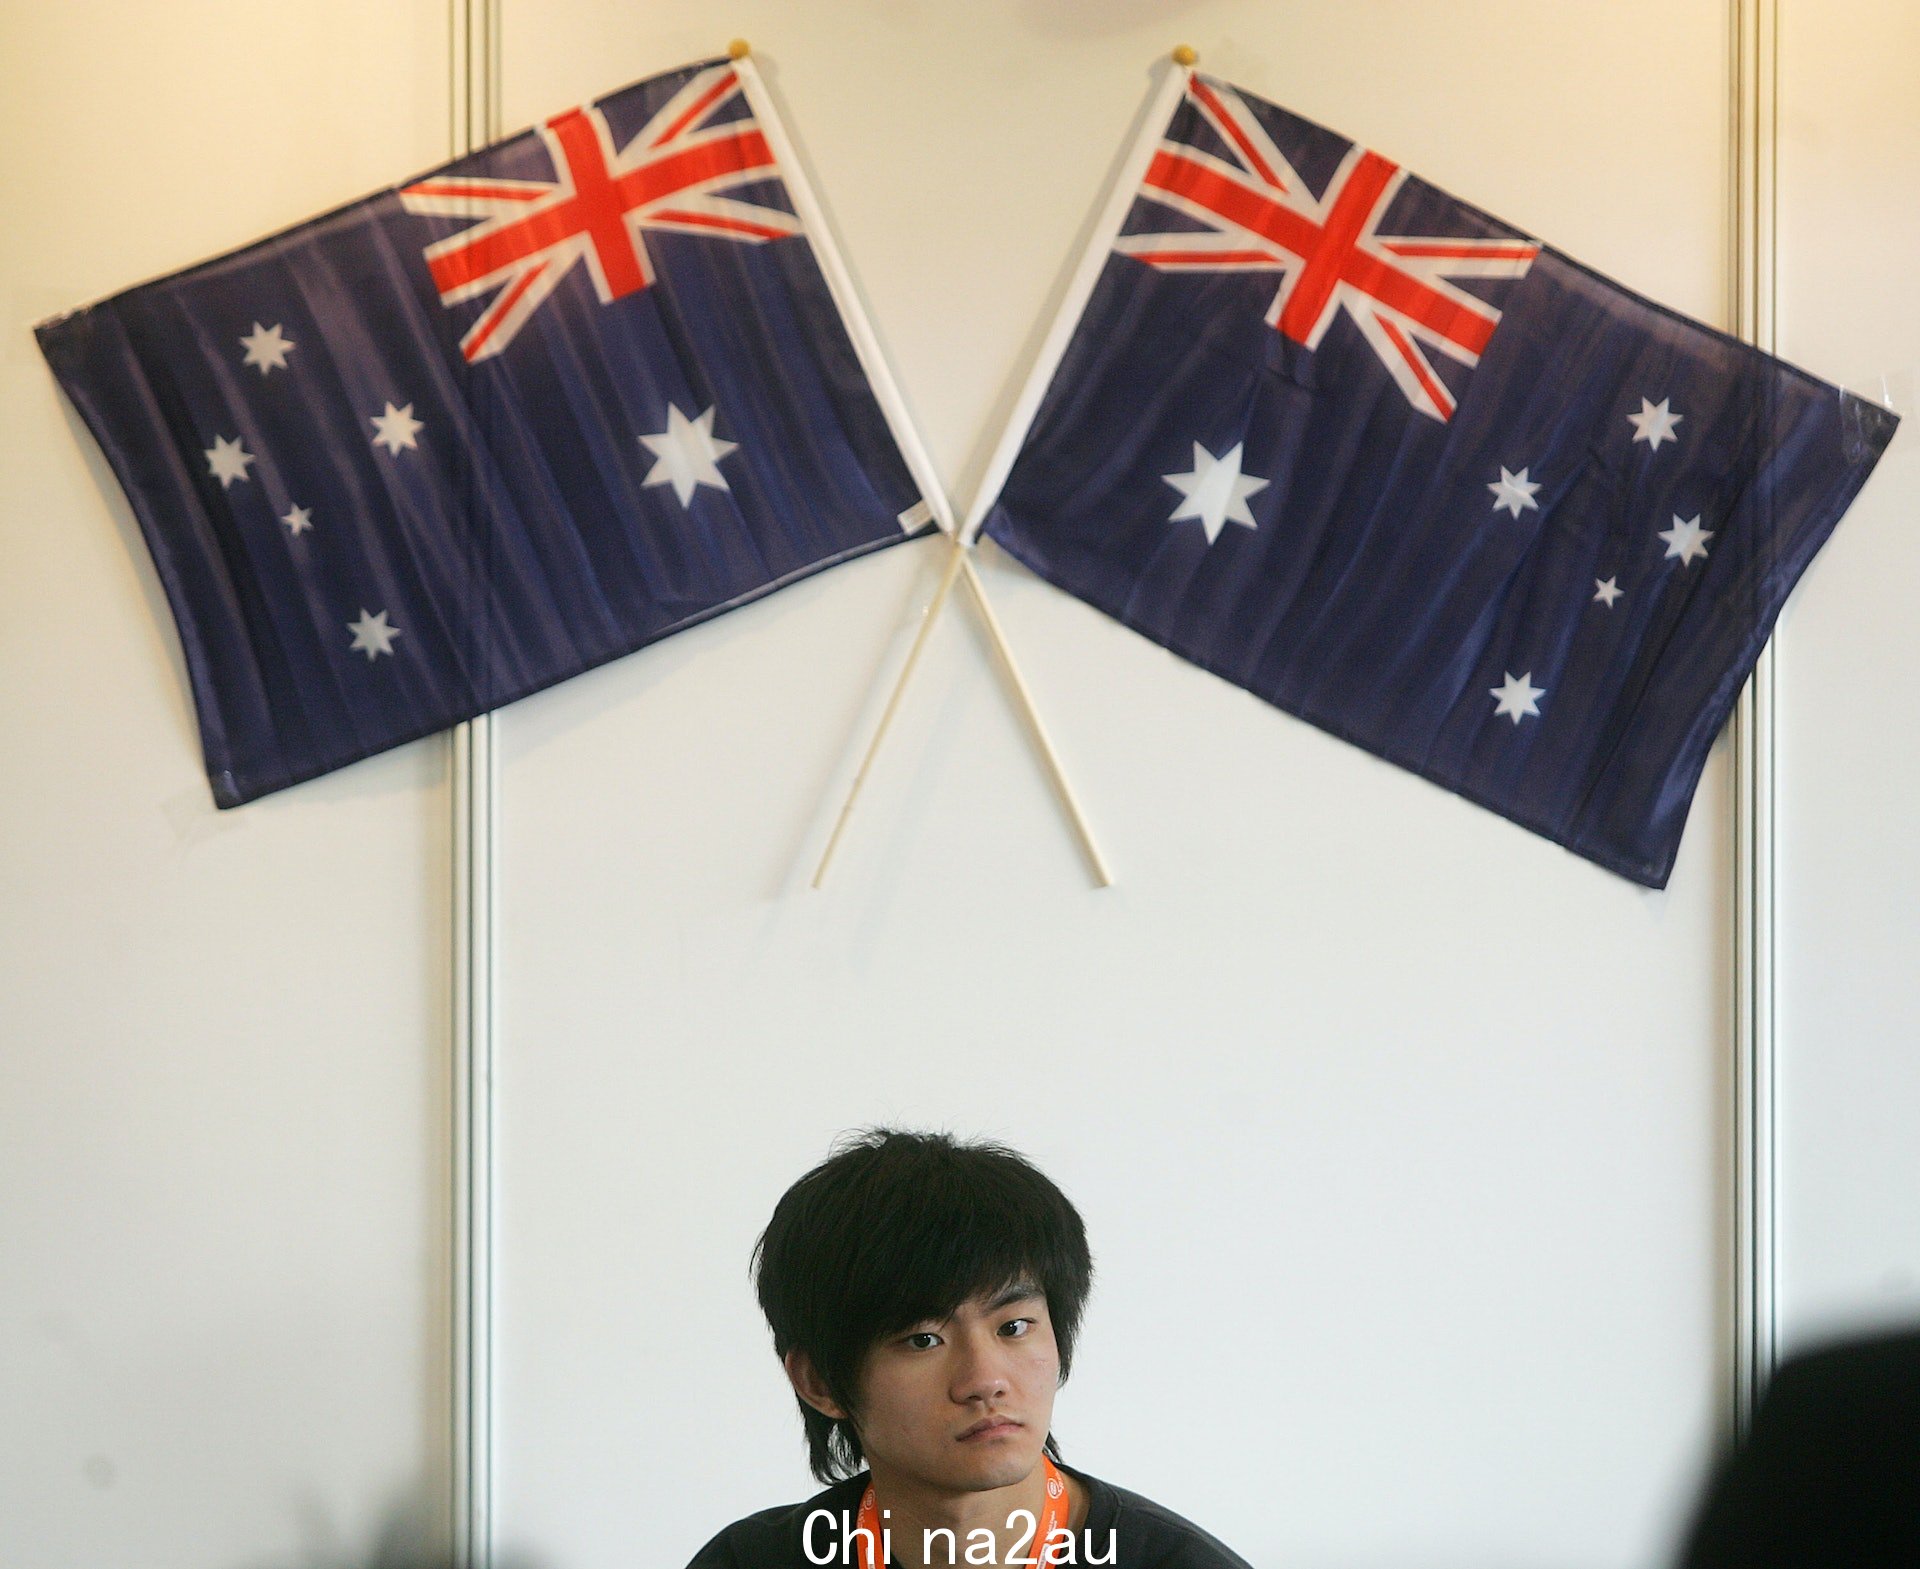 The过度依赖中国学生的问题引起了很多讨论n 最近在澳大利亚。 (Getty)